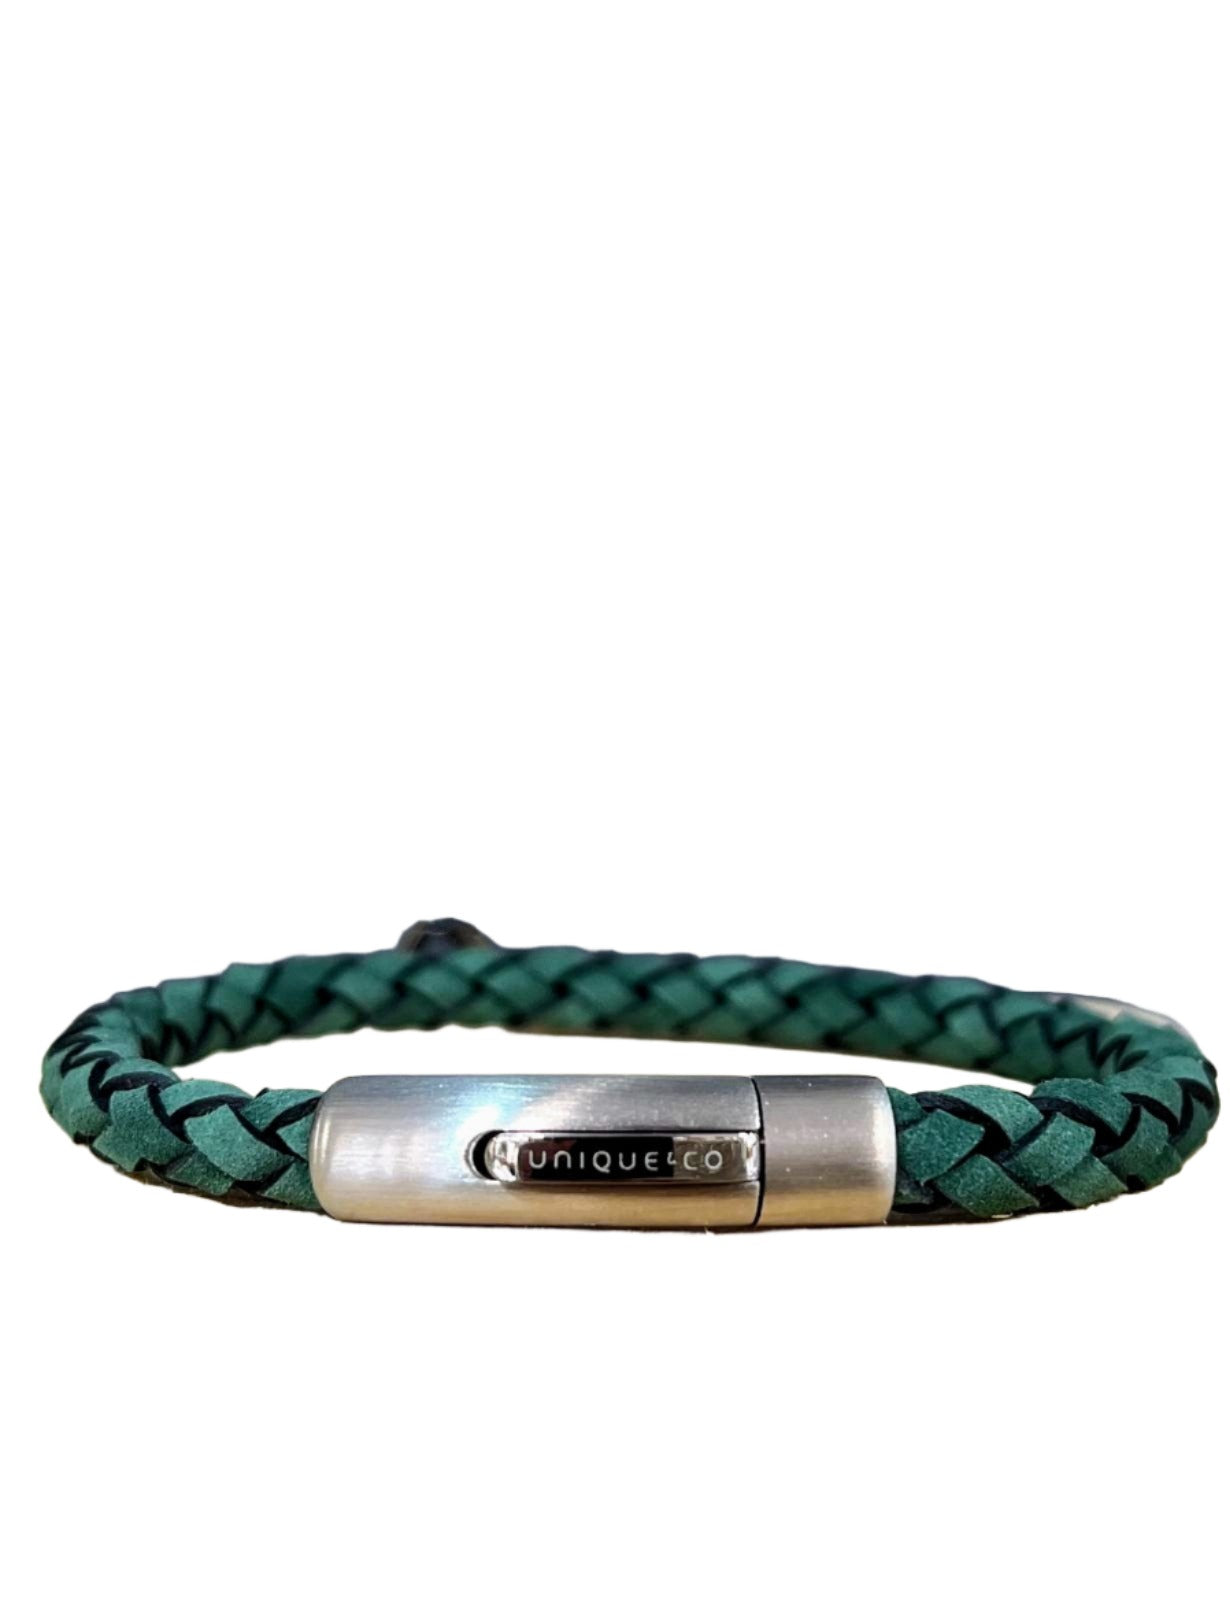 Unique & Co Green Suede Leather Bracelet